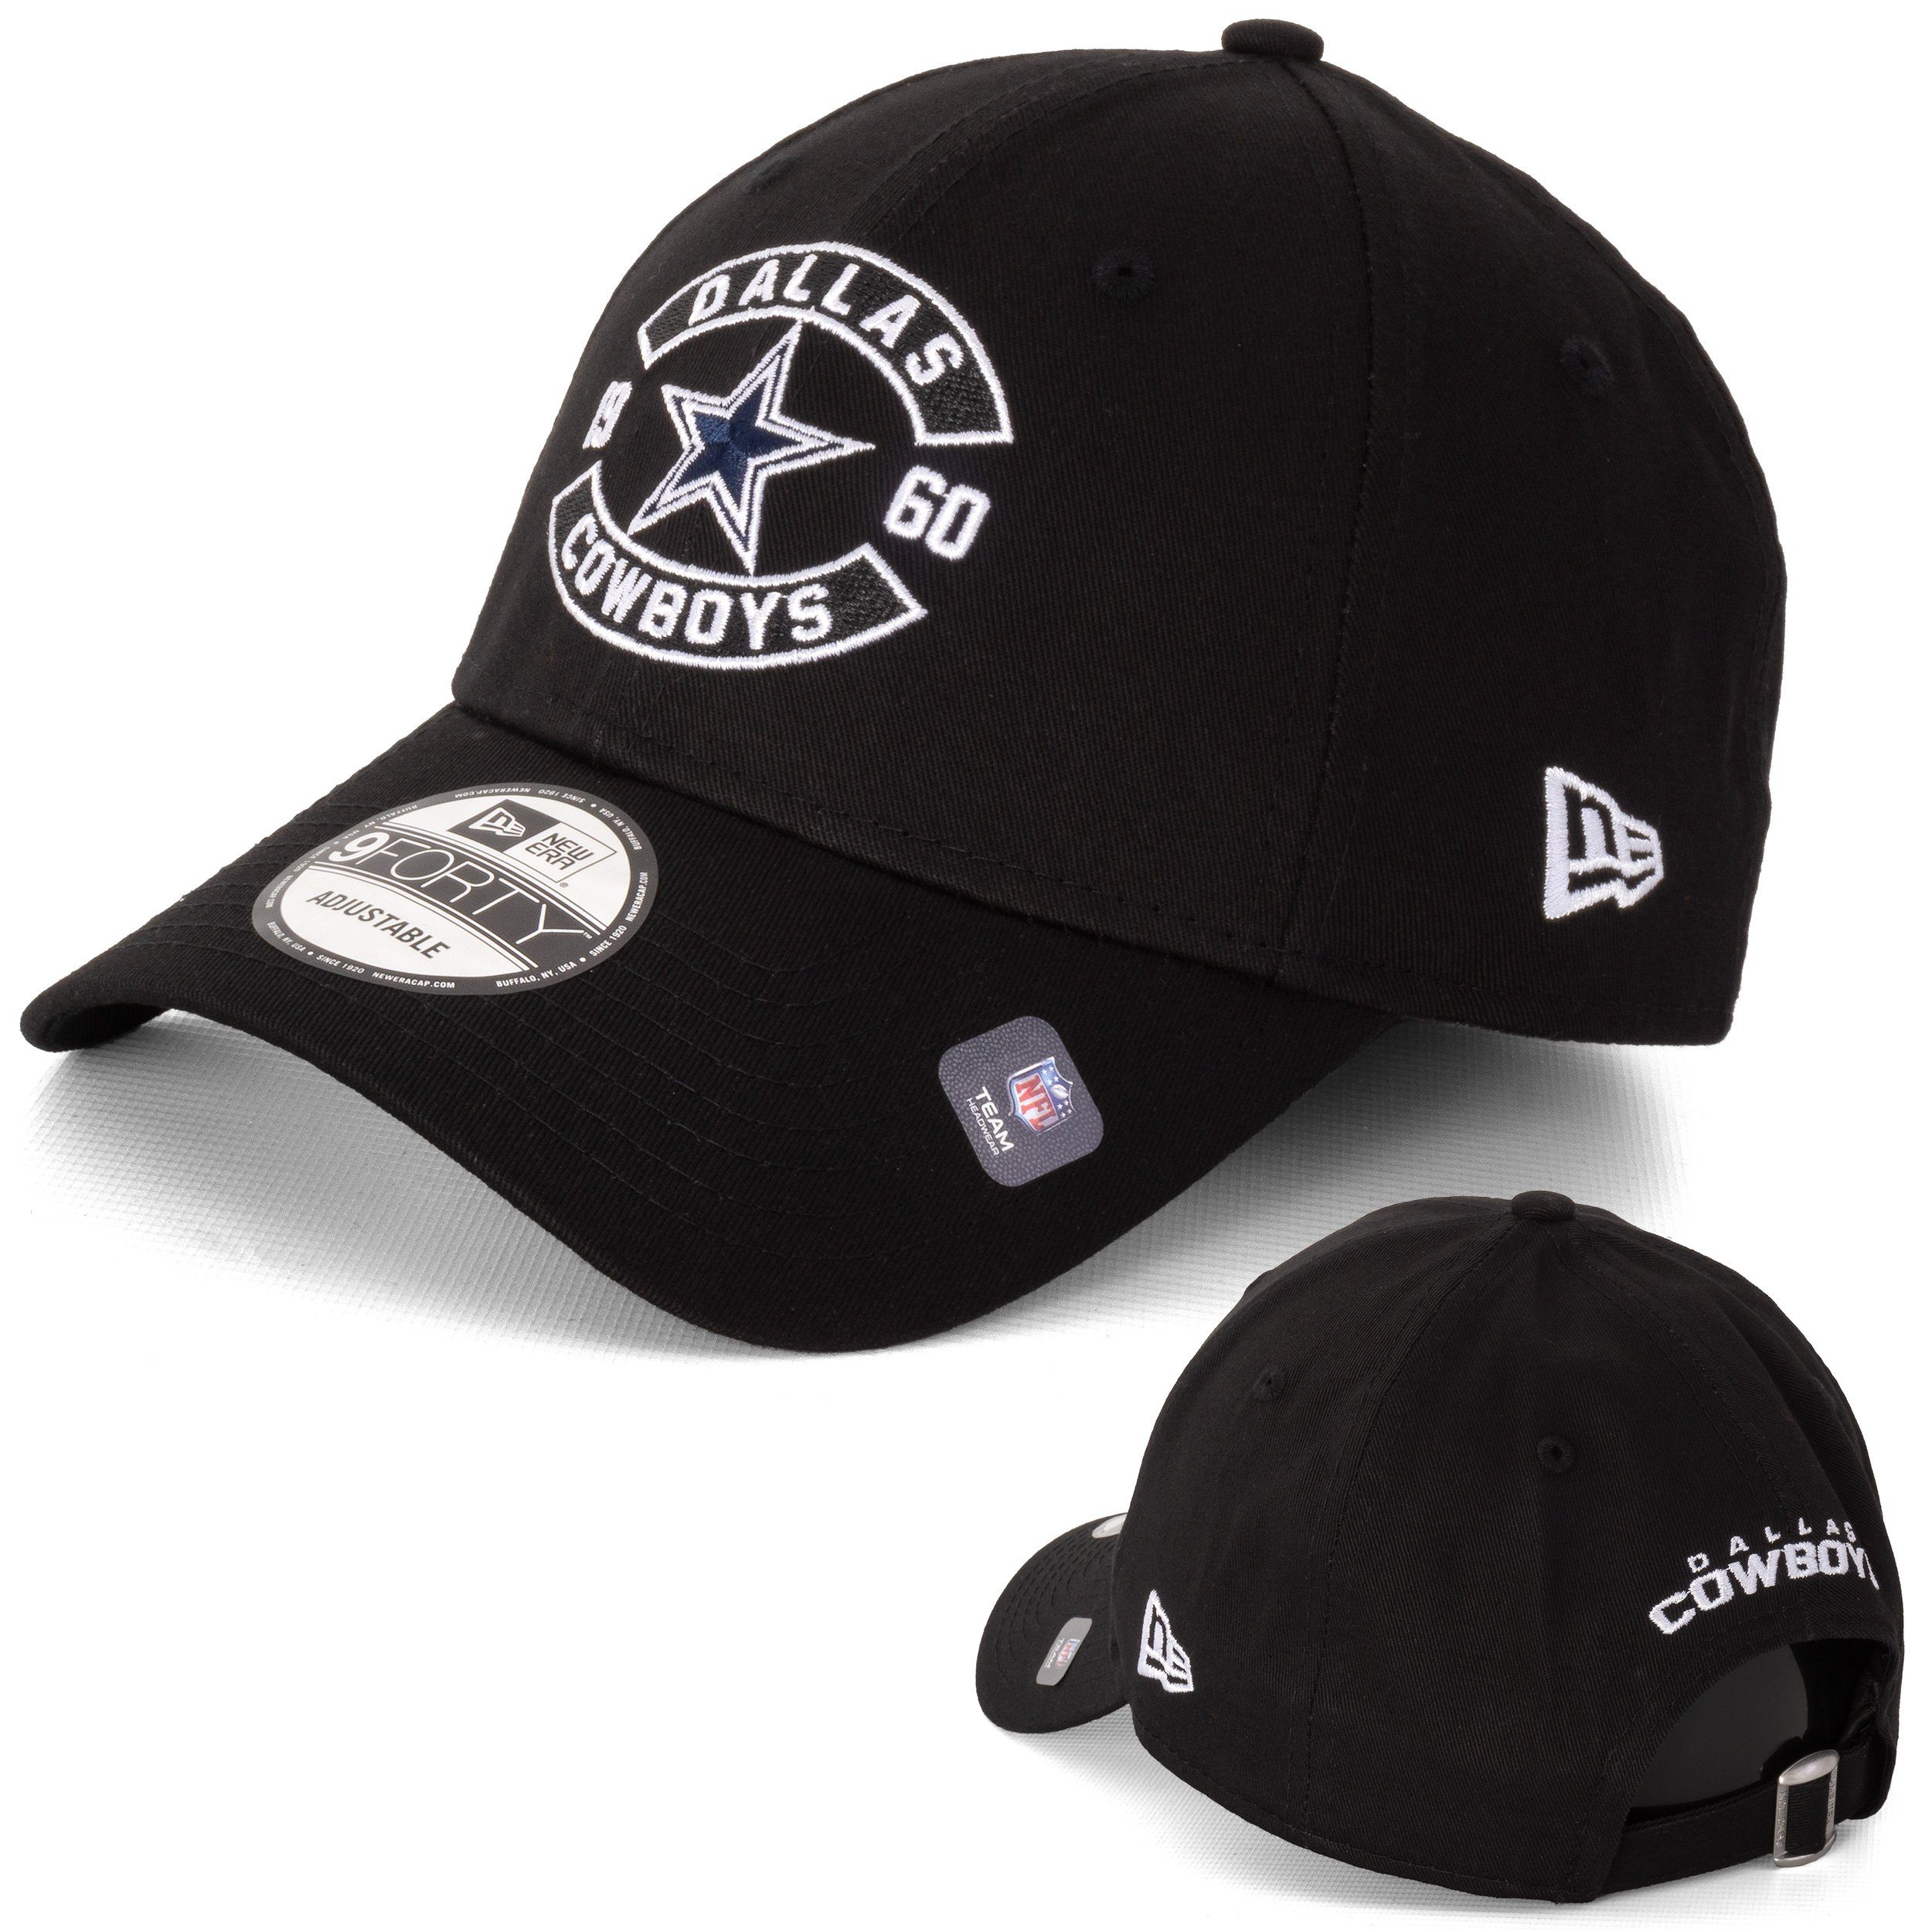 NFL New Era New 9Forty Cap Cap Era Cowboys Baseball Dallas